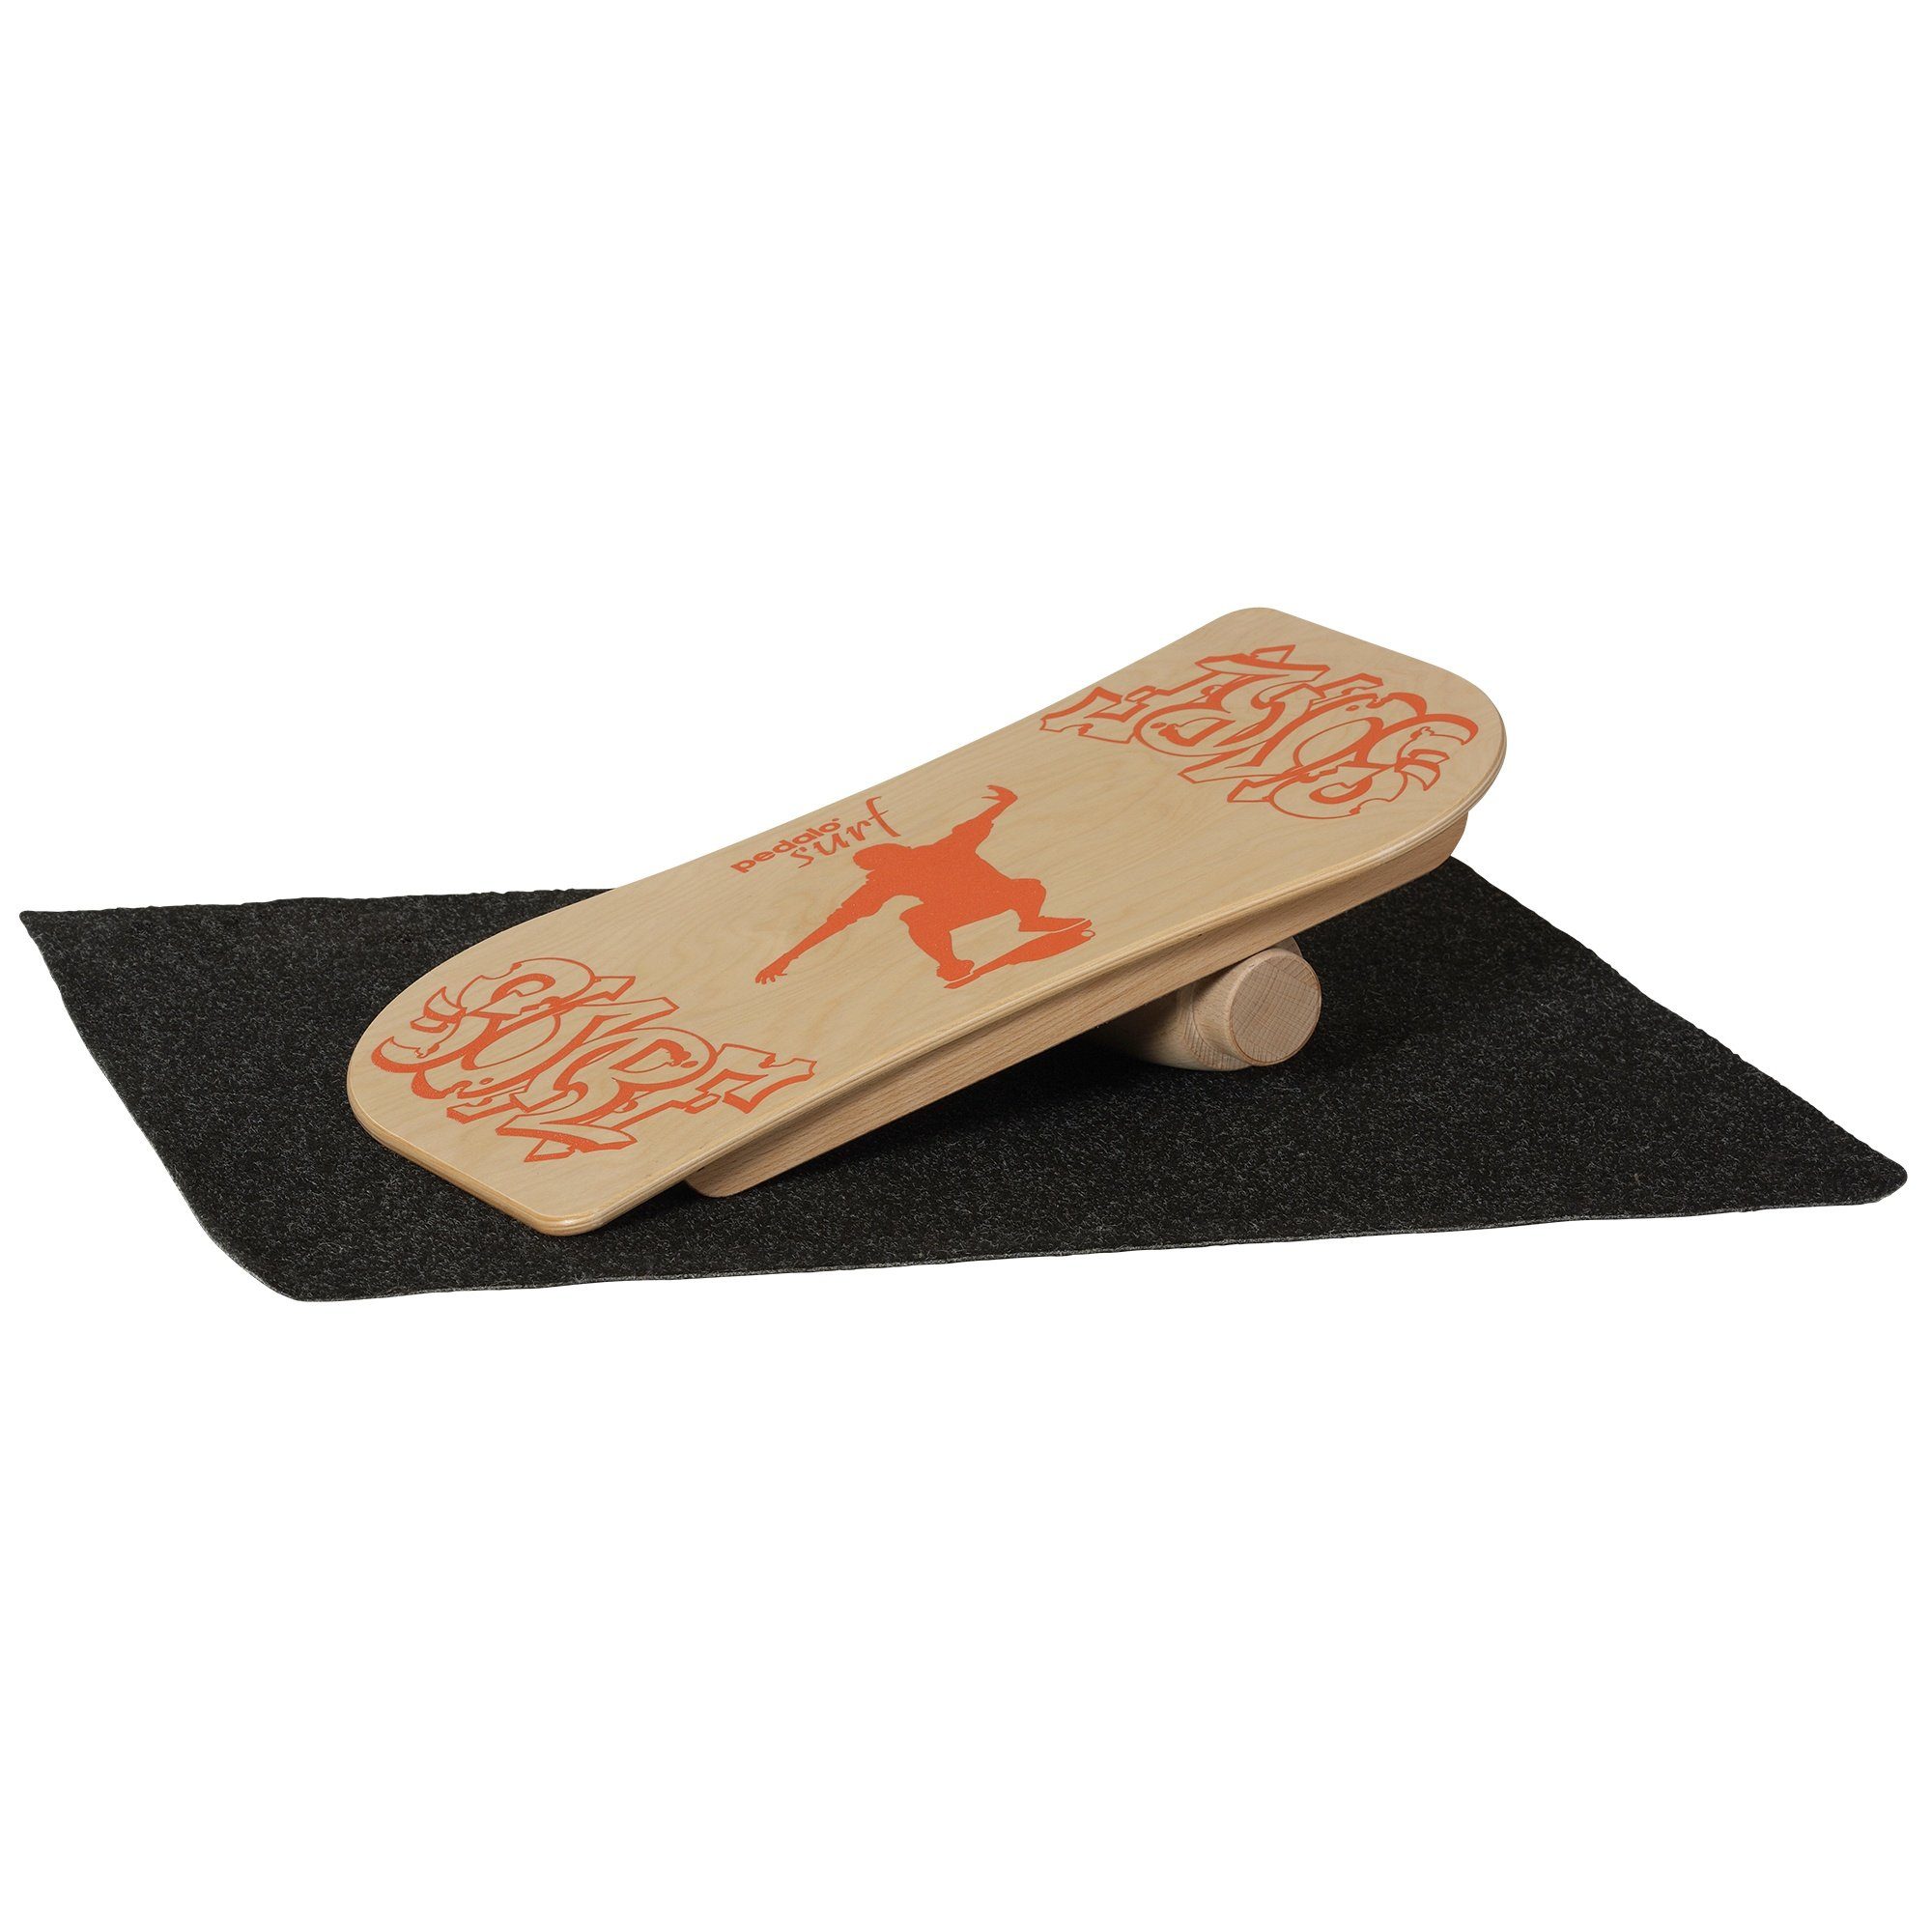 pedalo® Balanceboard PEDALO Surf - das dreidimensional wirkende Balanceboard, Rotation, Führung, Unterlage, Holz, Gummianschlag